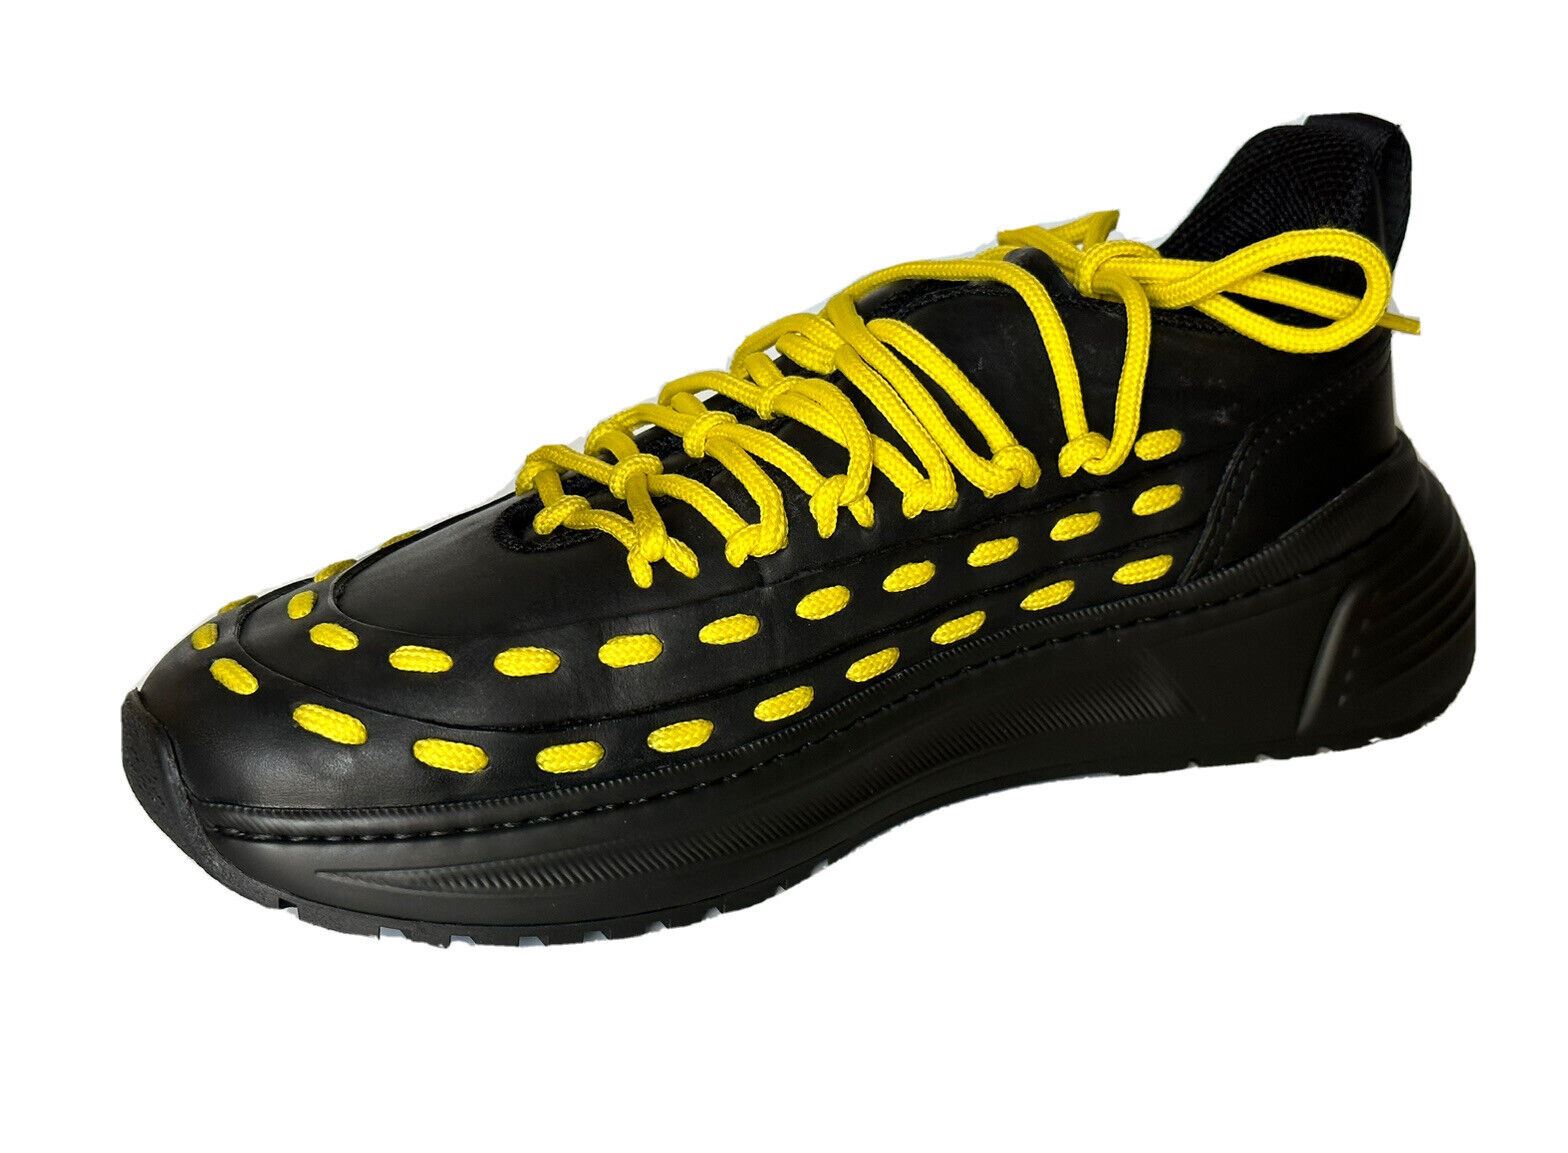 NIB 950 $ Bottega Veneta Herren-Sneaker aus Leder in Schwarz/Gelb 7,5 US 578305 1013 